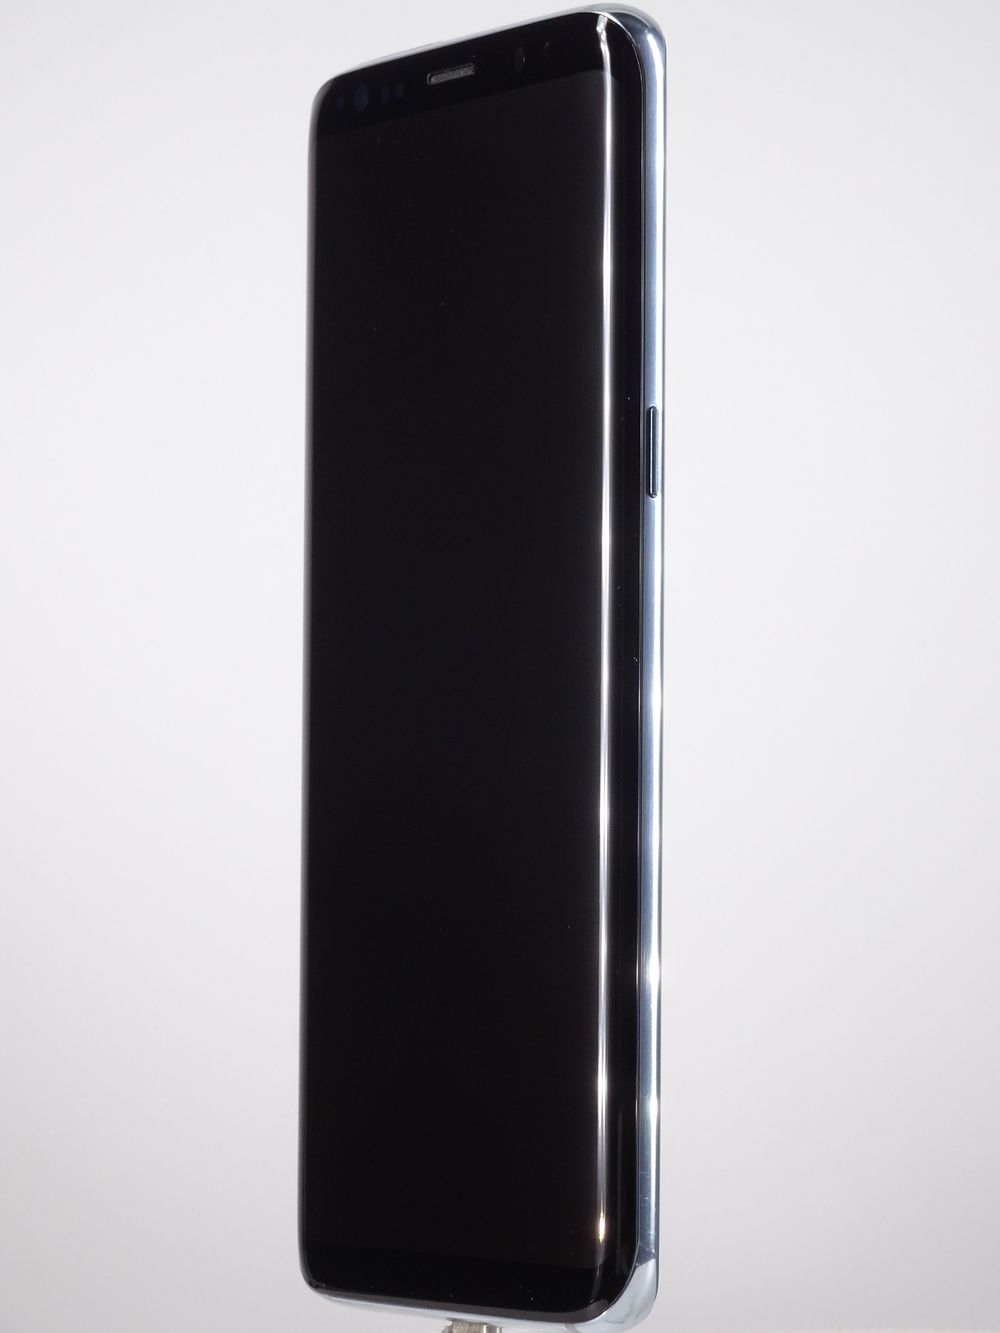 Мобилен телефон Samsung Galaxy S8, Coral Blue, 64 GB, Foarte Bun